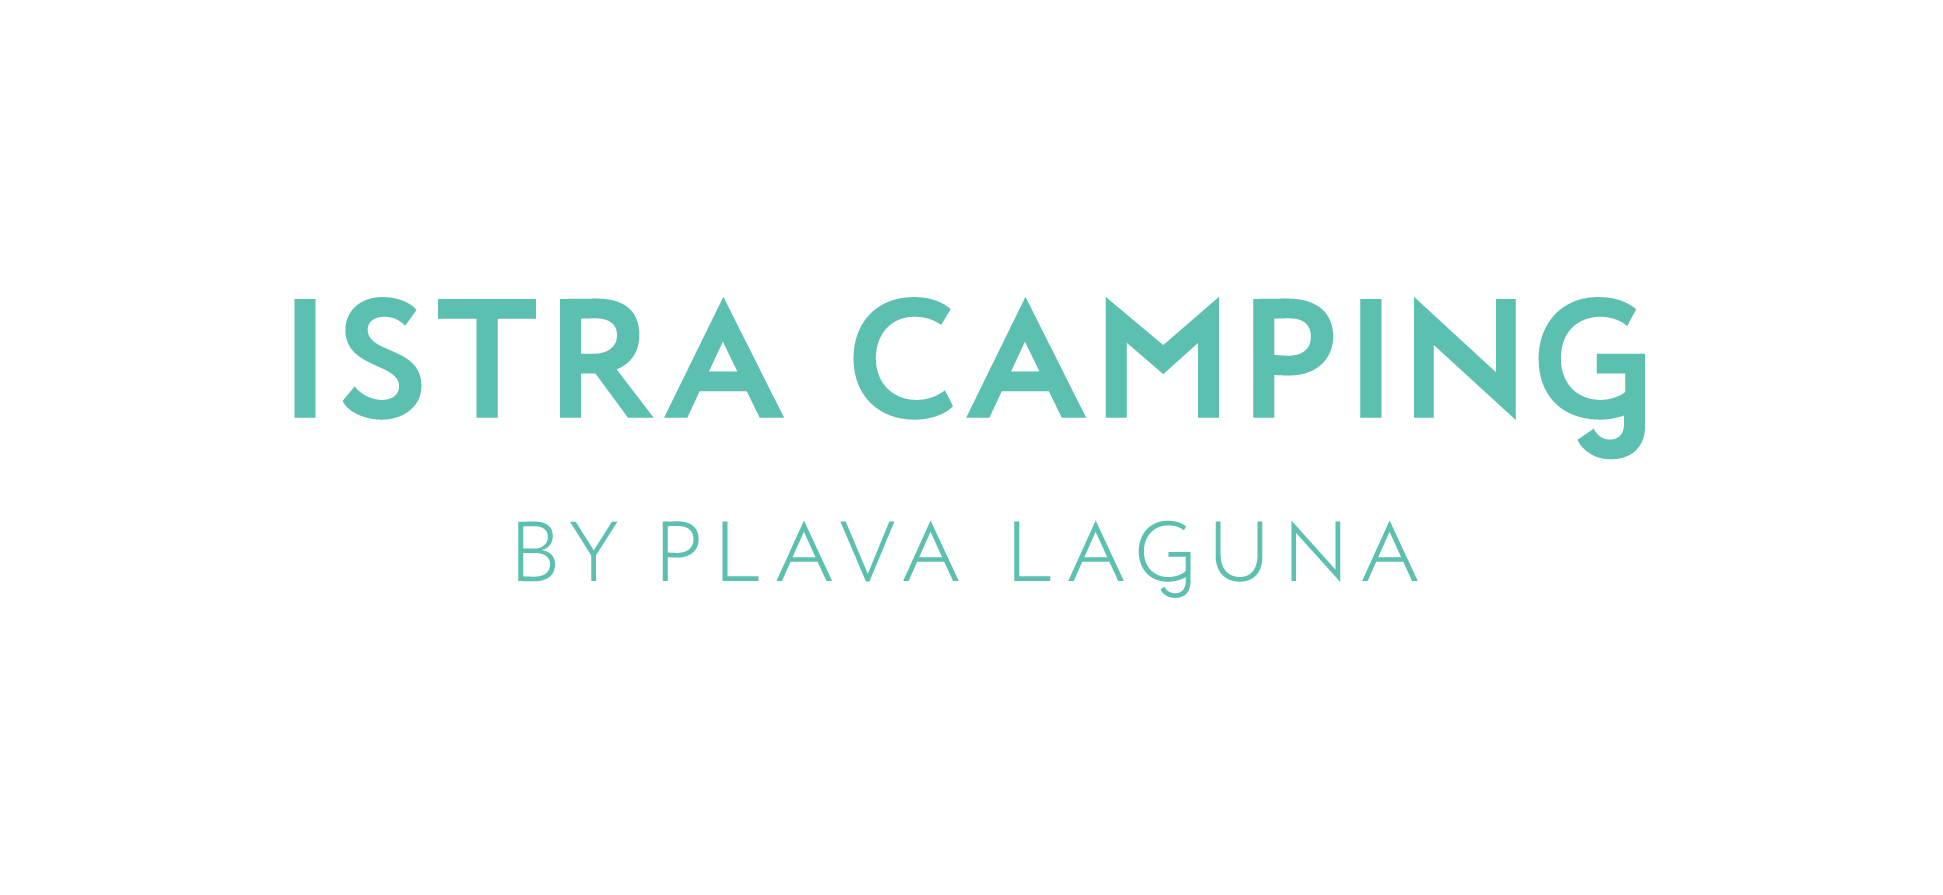 Camping Bijela Uvala